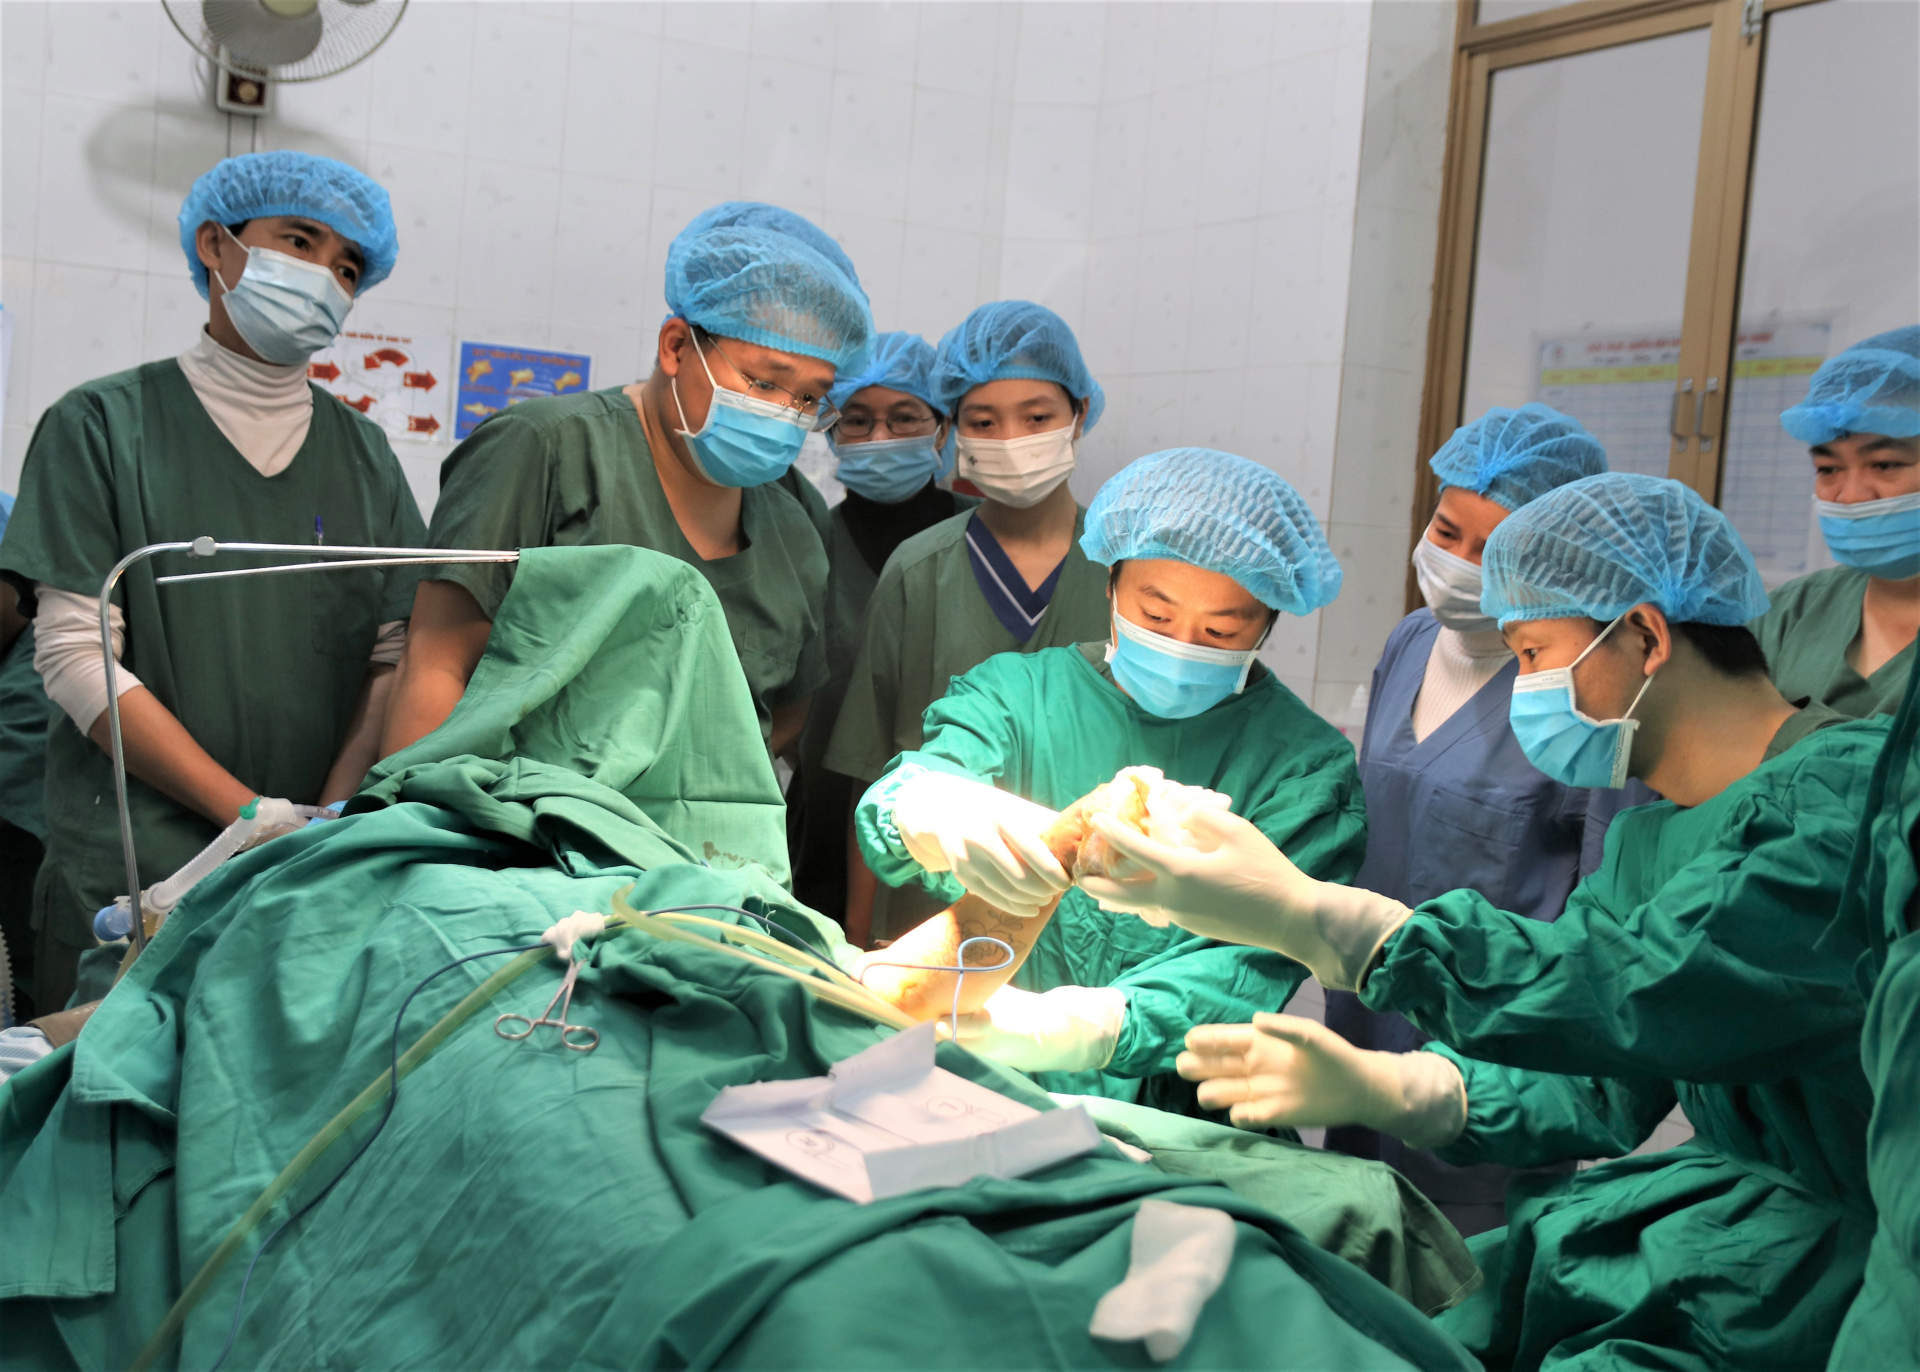 Ca phẫu thuật kết hợp xương cẳng tay thành công có sự hỗ trợ về chuyên môn của các chuyên gia đến từ Tập đoàn Y tế EMS Nhật Bản.